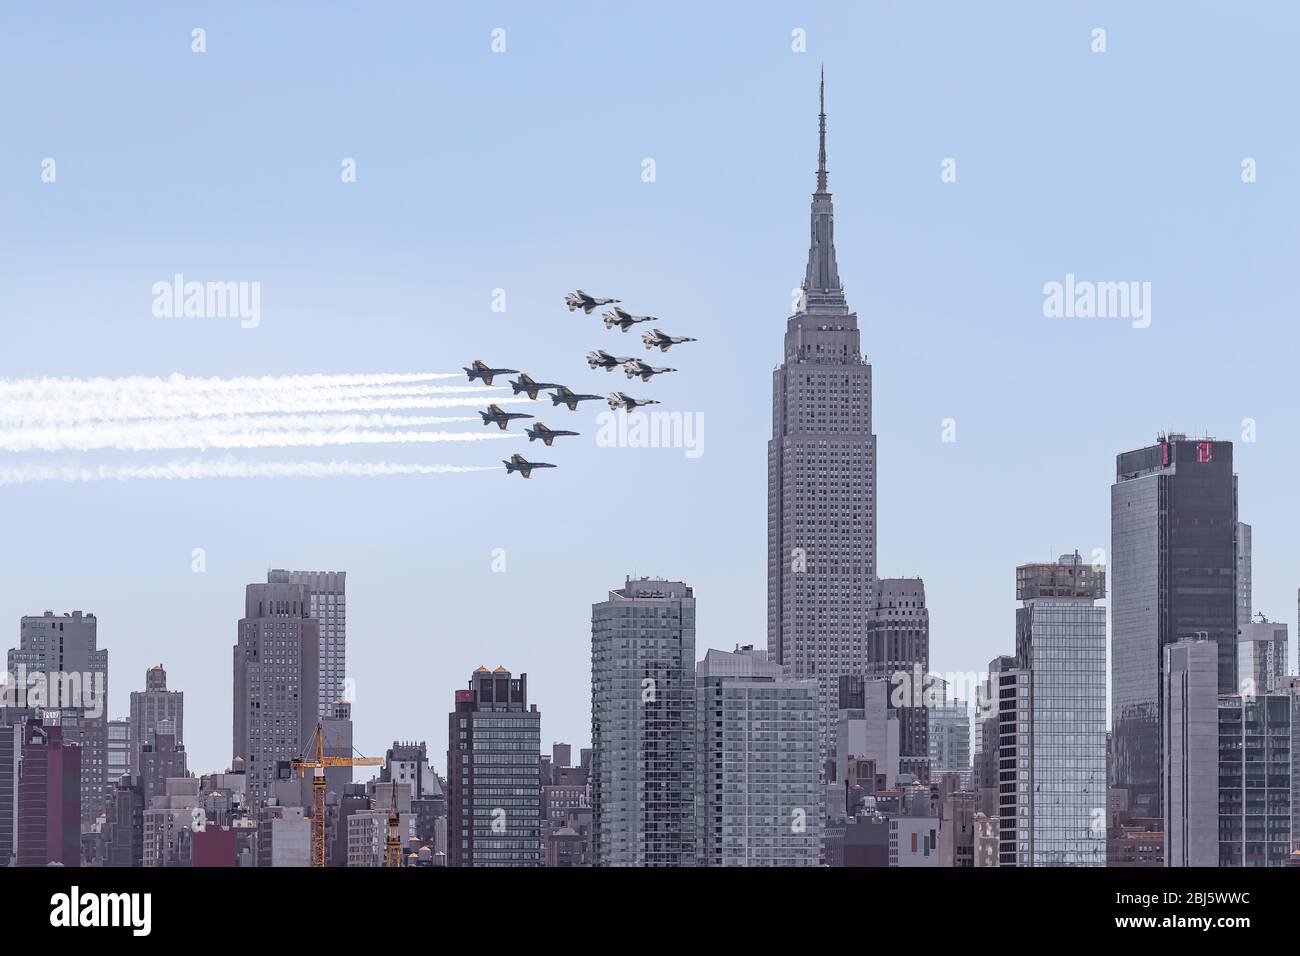 NYC Salute à Heros - US Navy Blue Angels et les US Air Force Thunderbirds volent au-dessus de New York City en saluant les premiers intervenants de première ligne. Banque D'Images